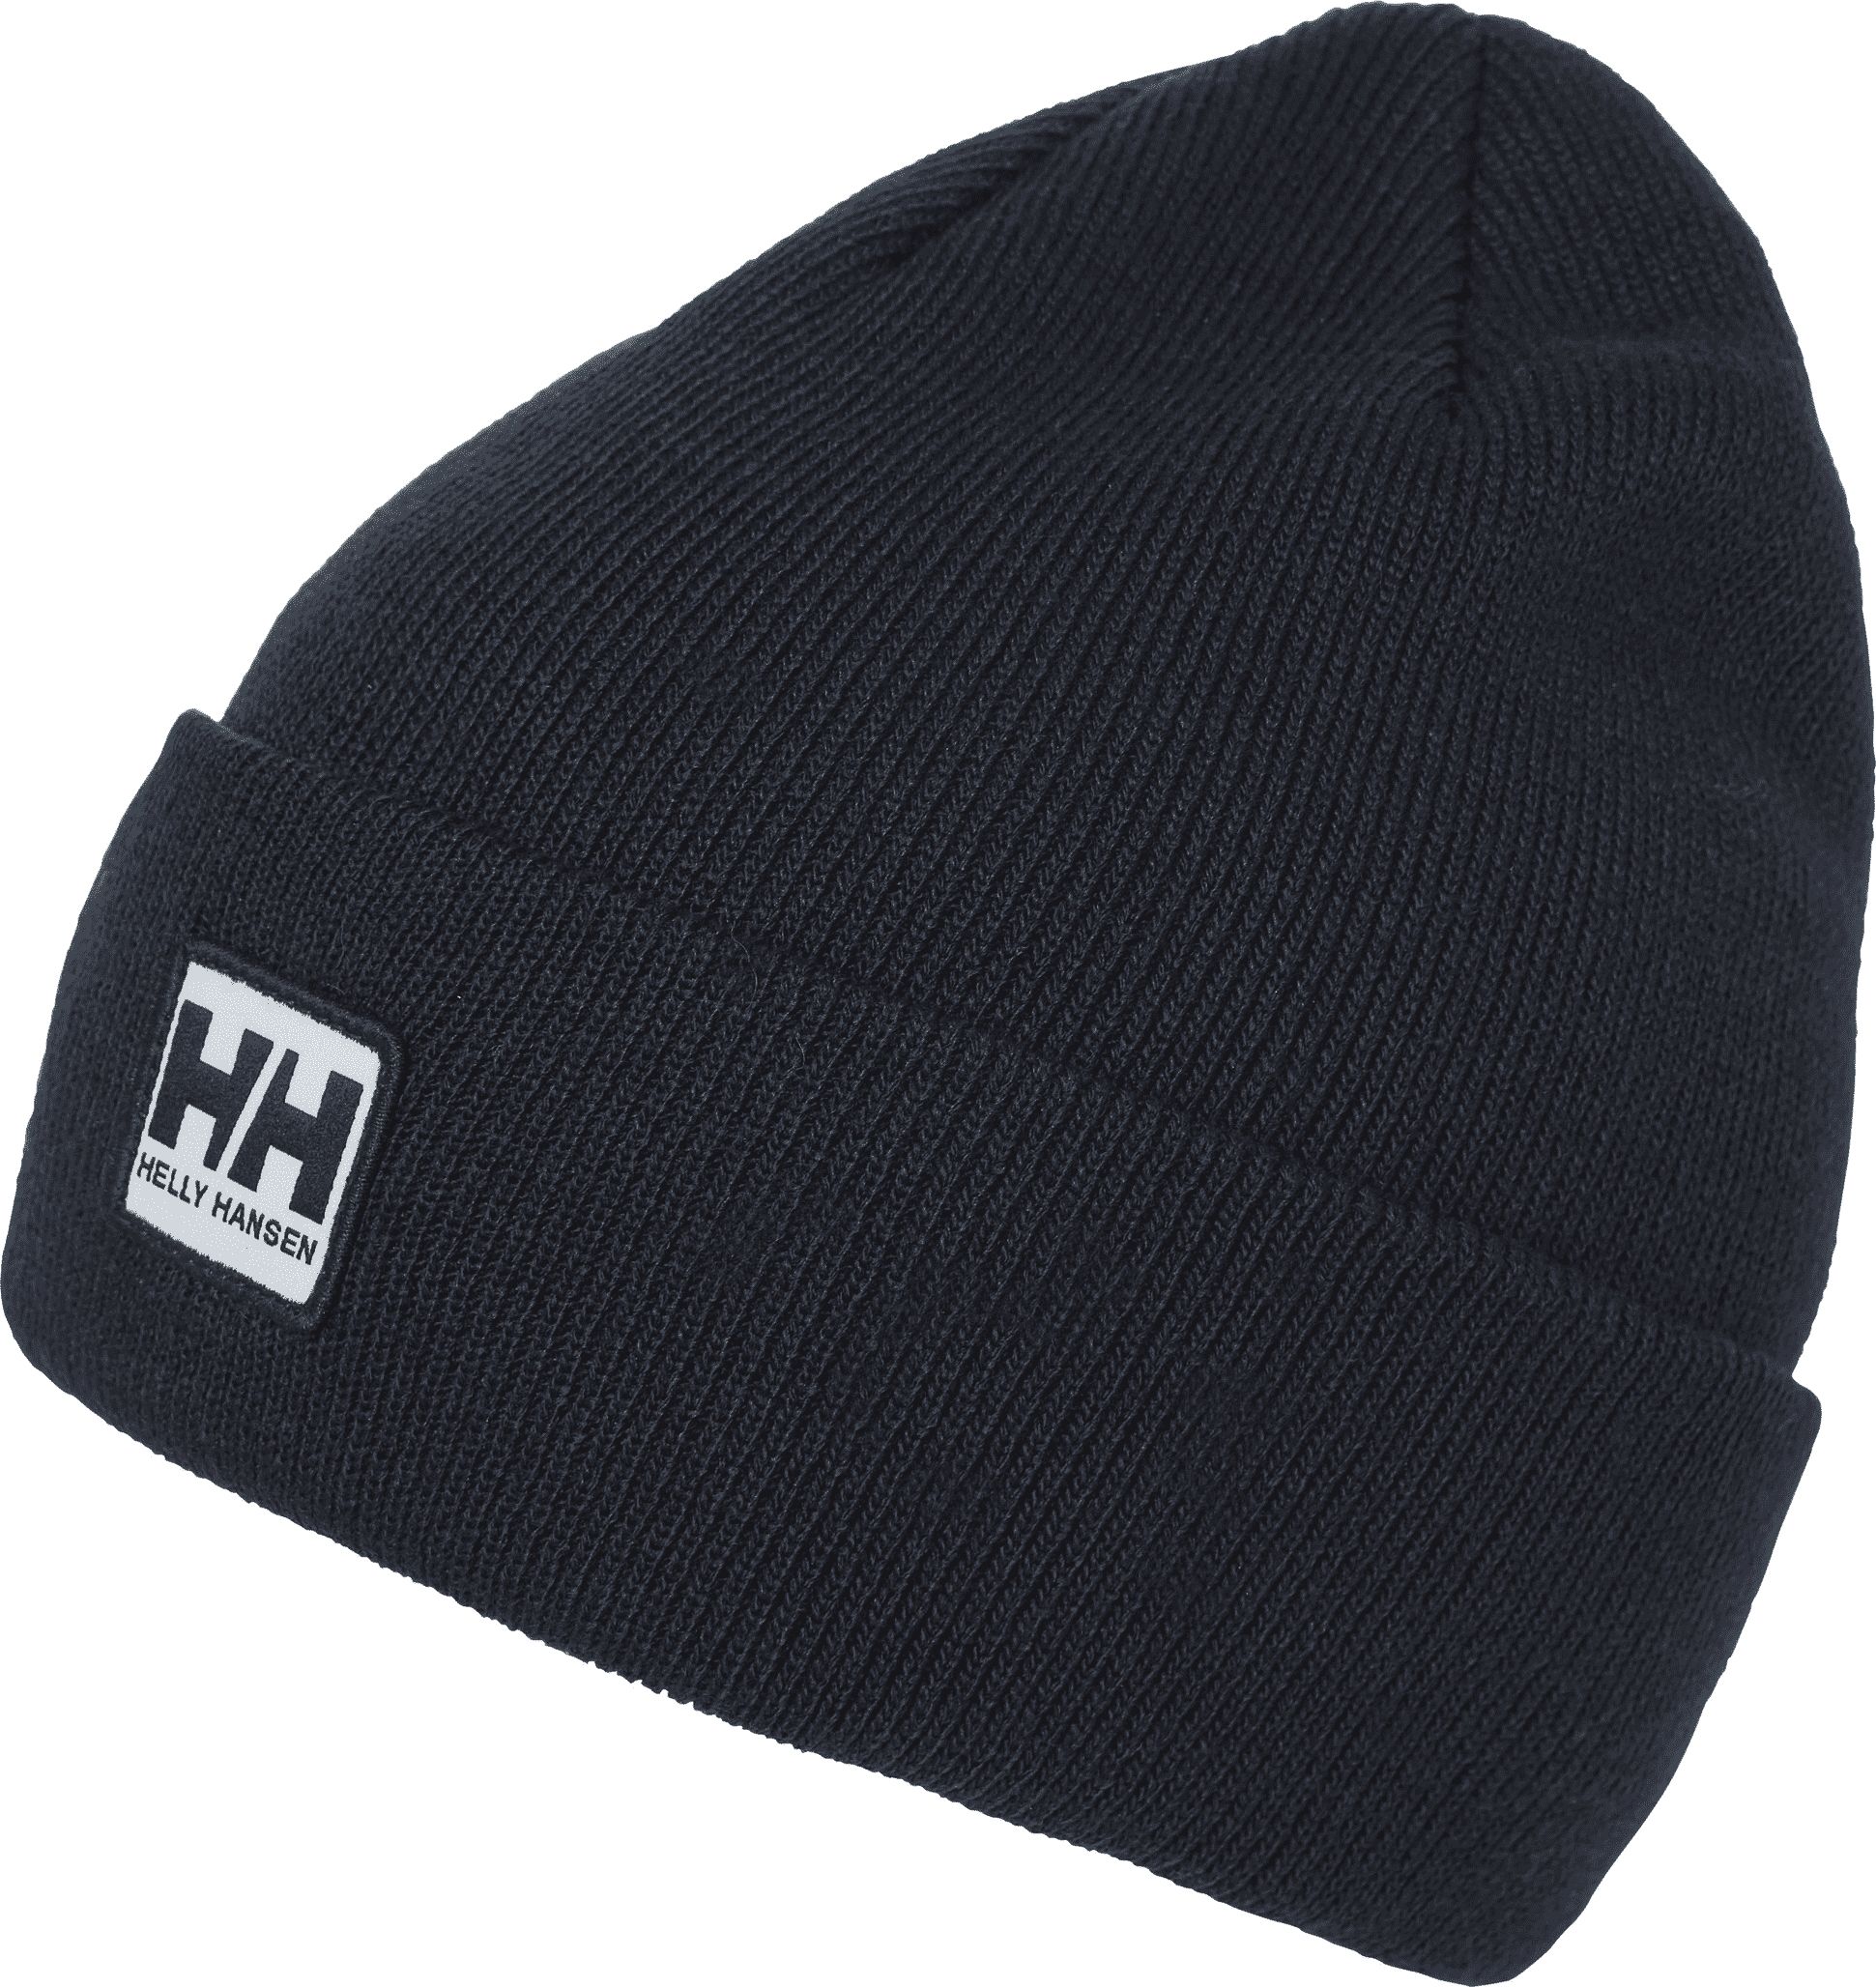 Helly Hansen Urban Cuff Beanie Navy winter hat. Universal